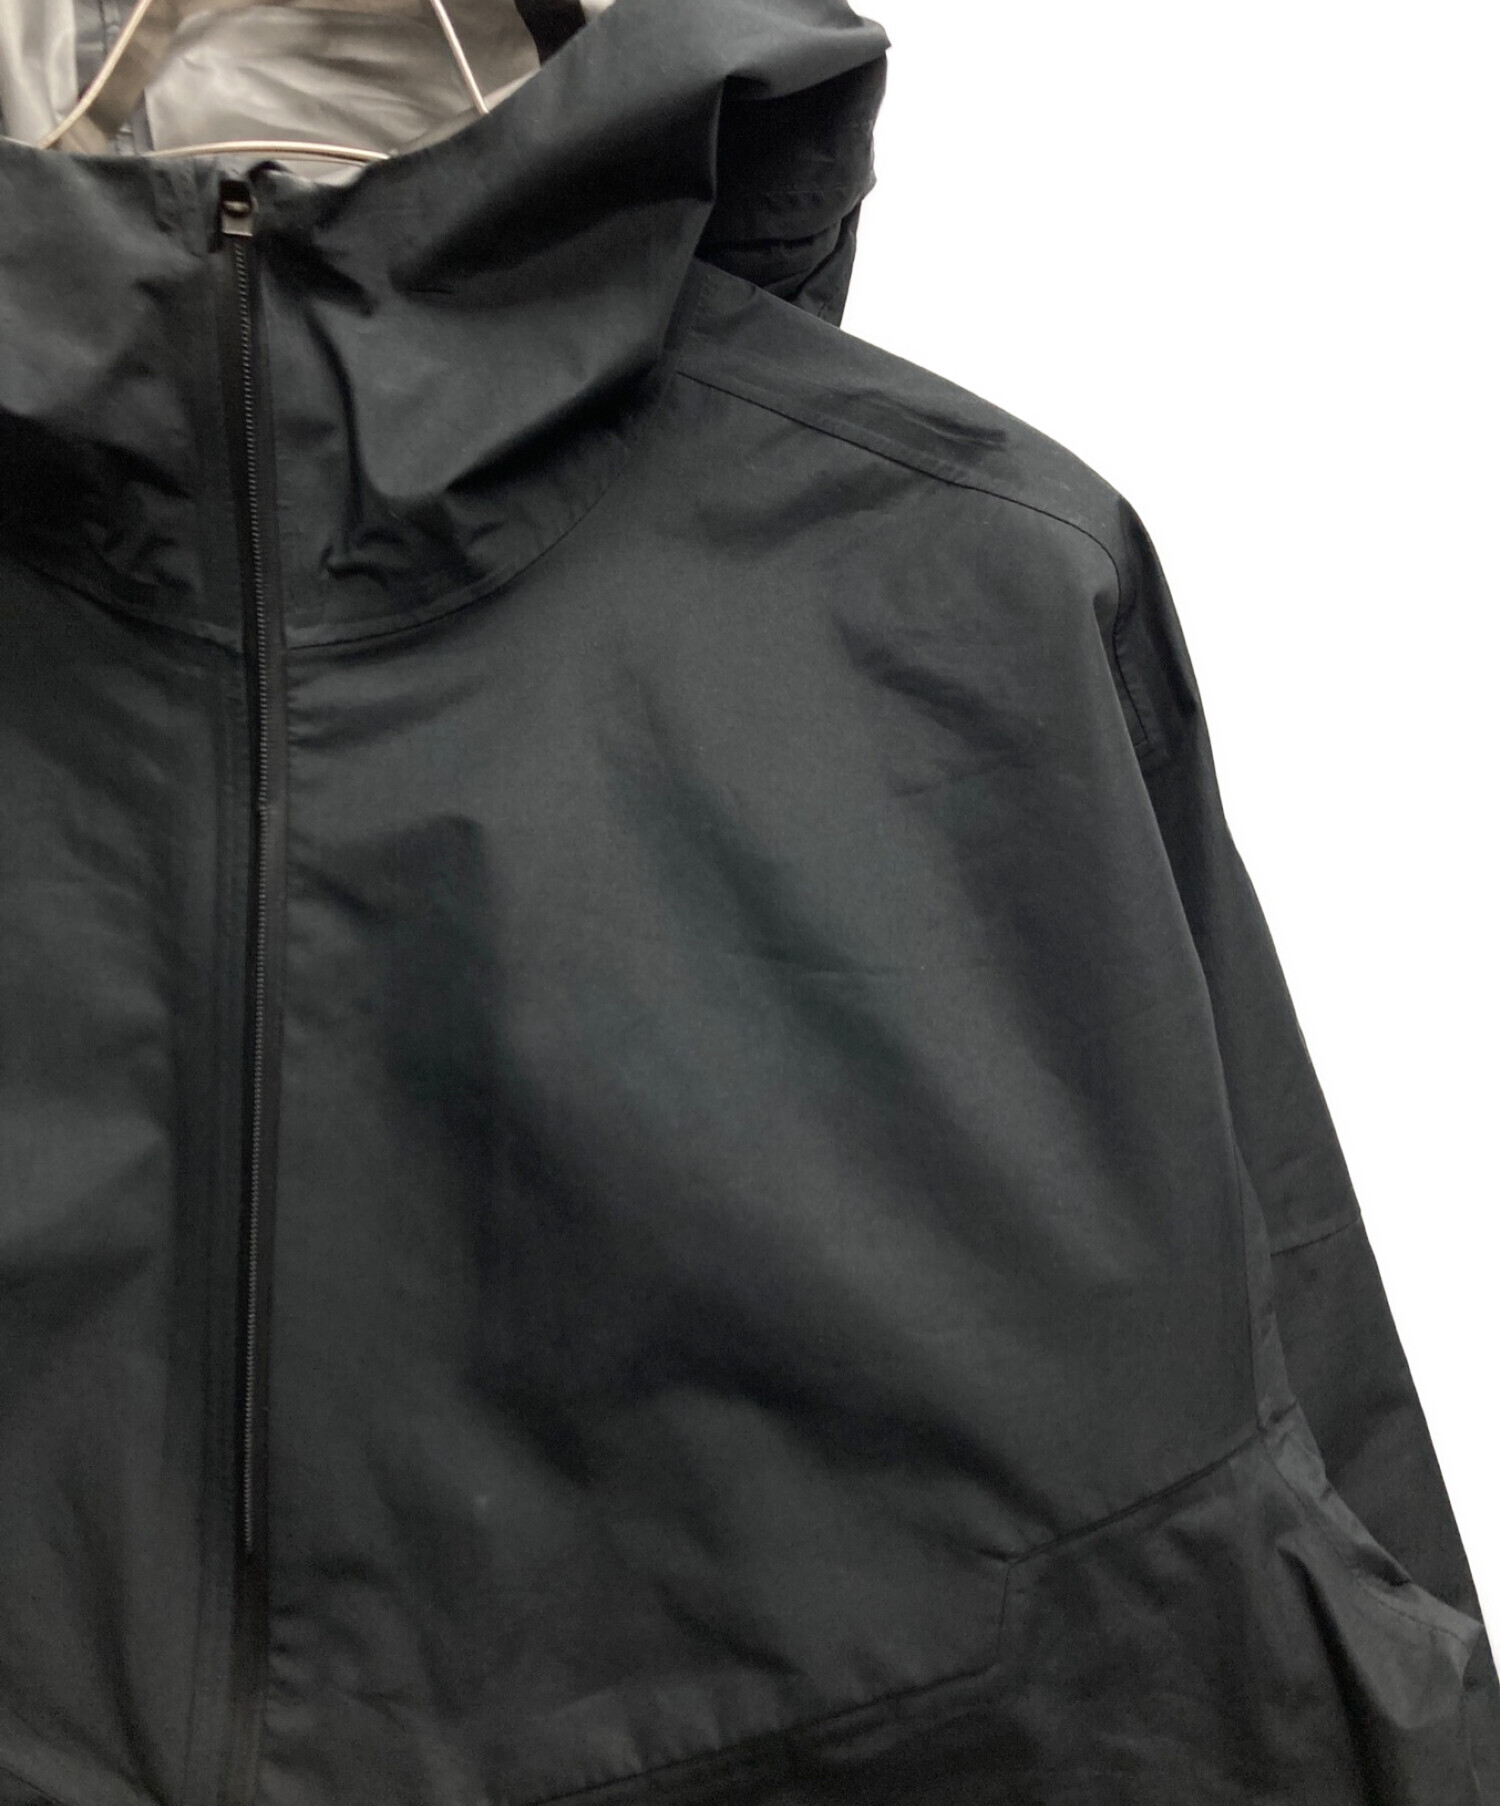 NIKE (ナイキ) GORE-TEX トレイルランニングジャケット/ゴアテックス ブラック サイズ:L